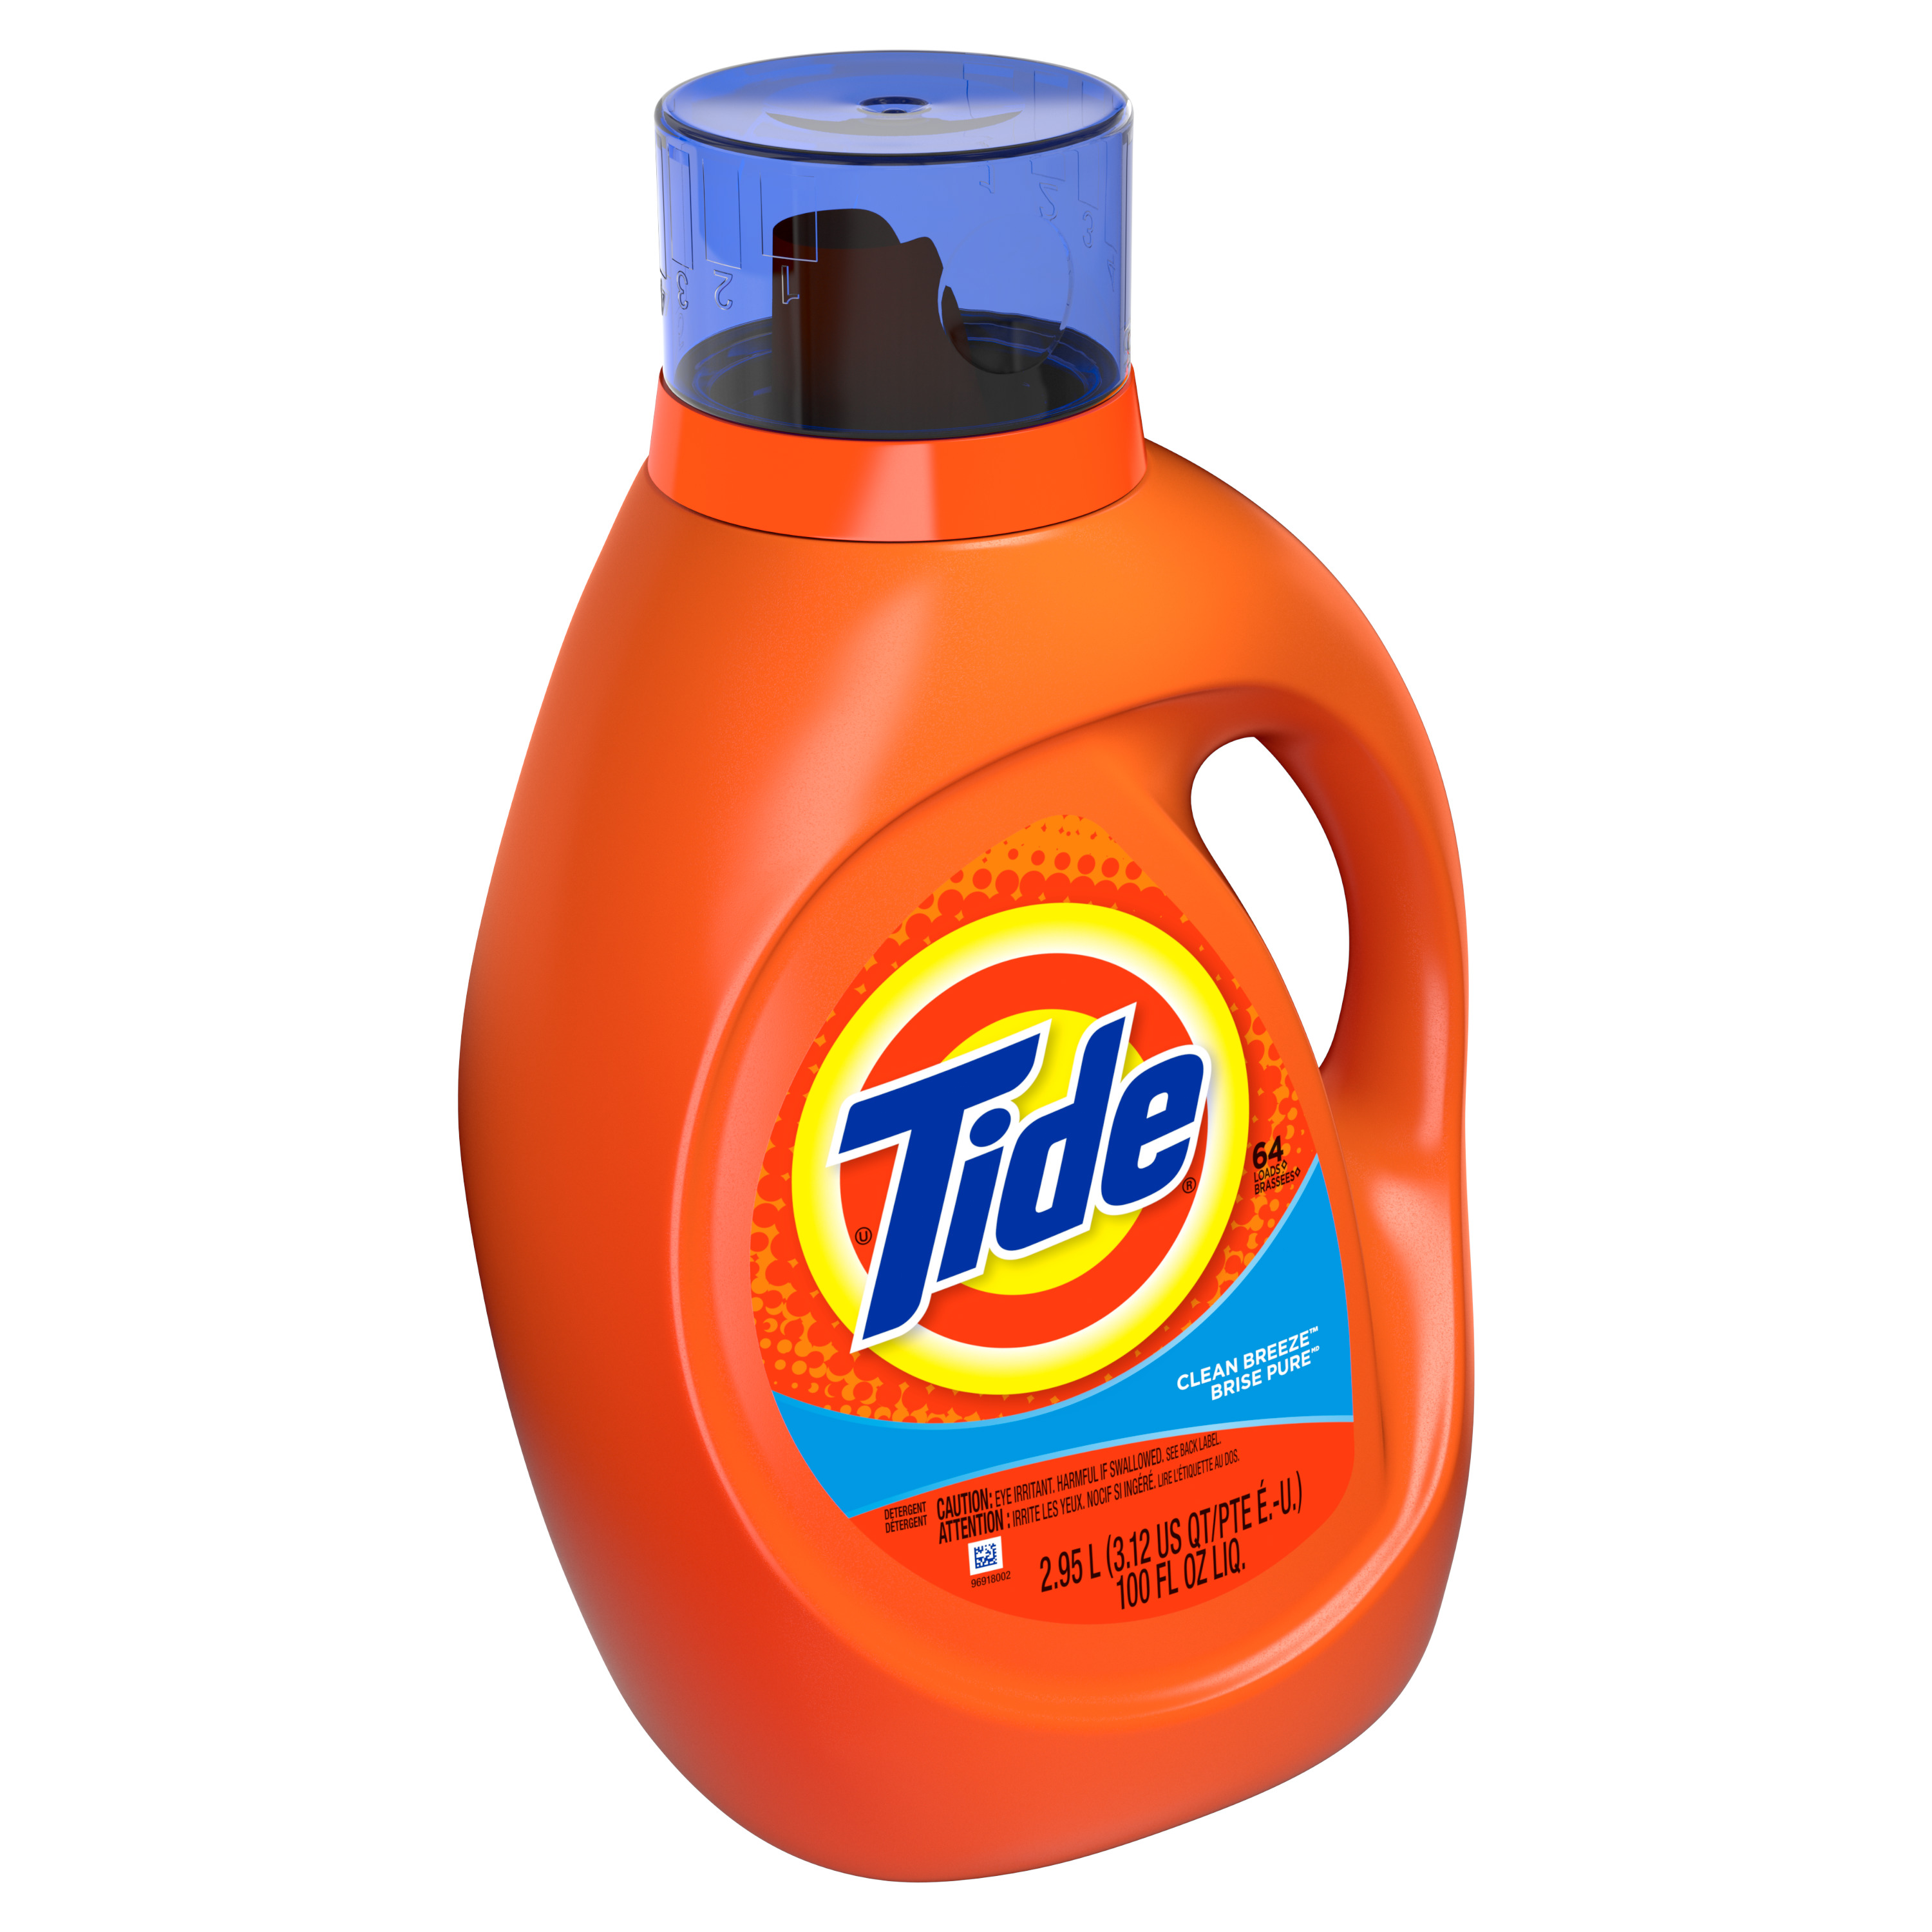 Tide Clean Breeze Scent Liquid Laundry Detergent, 64 loads, 2.95 L - image 2 of 9